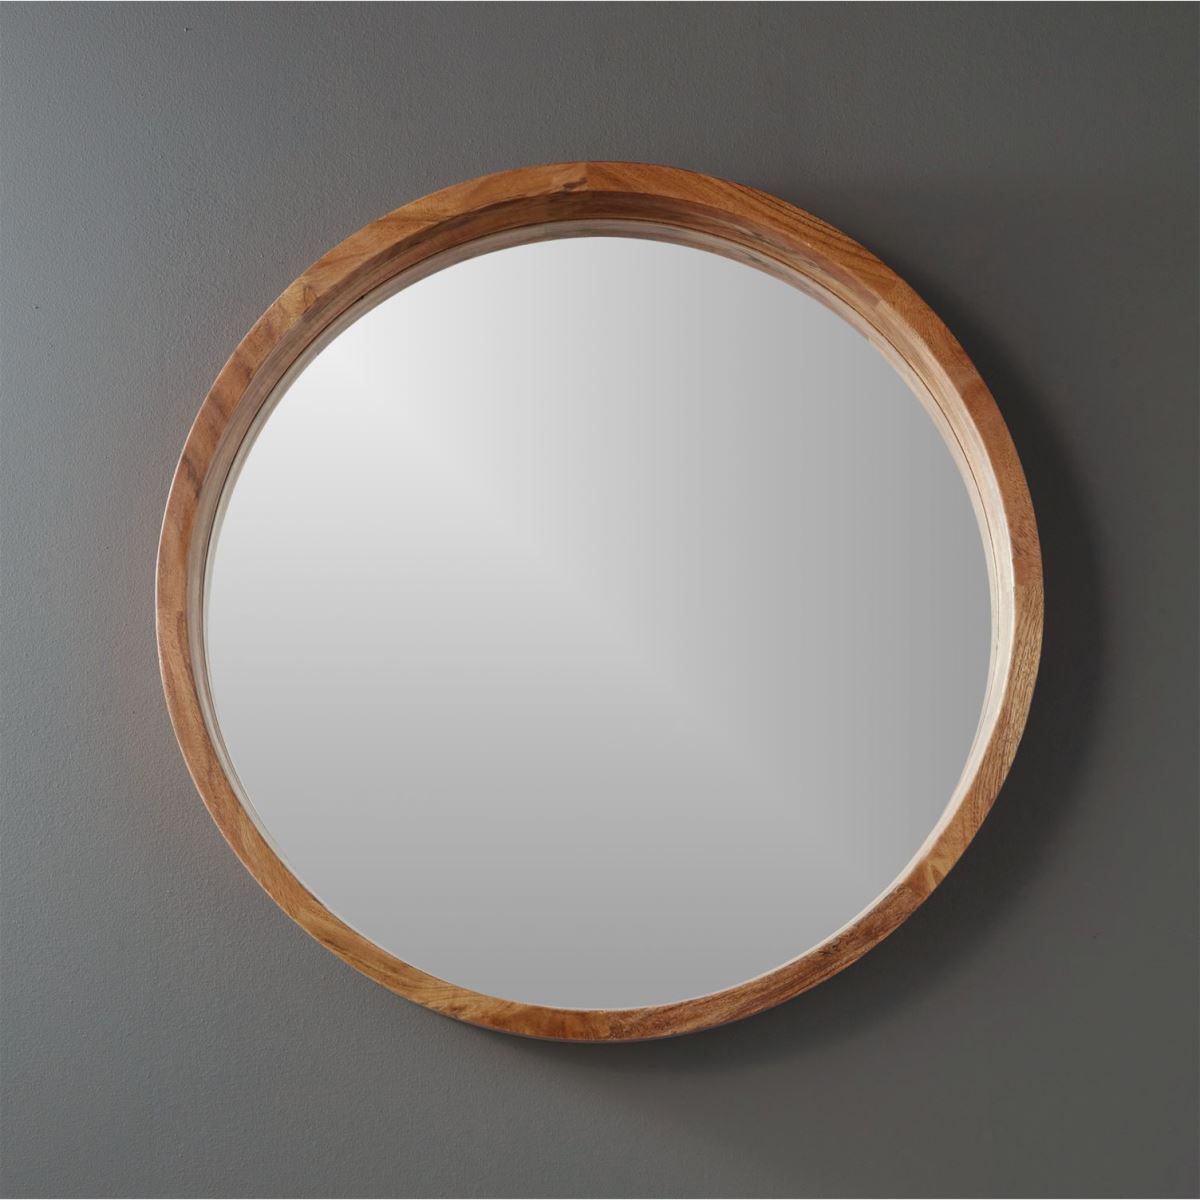 Gương tròn viền gỗ sồi màu vàng  2 phân Ø 500